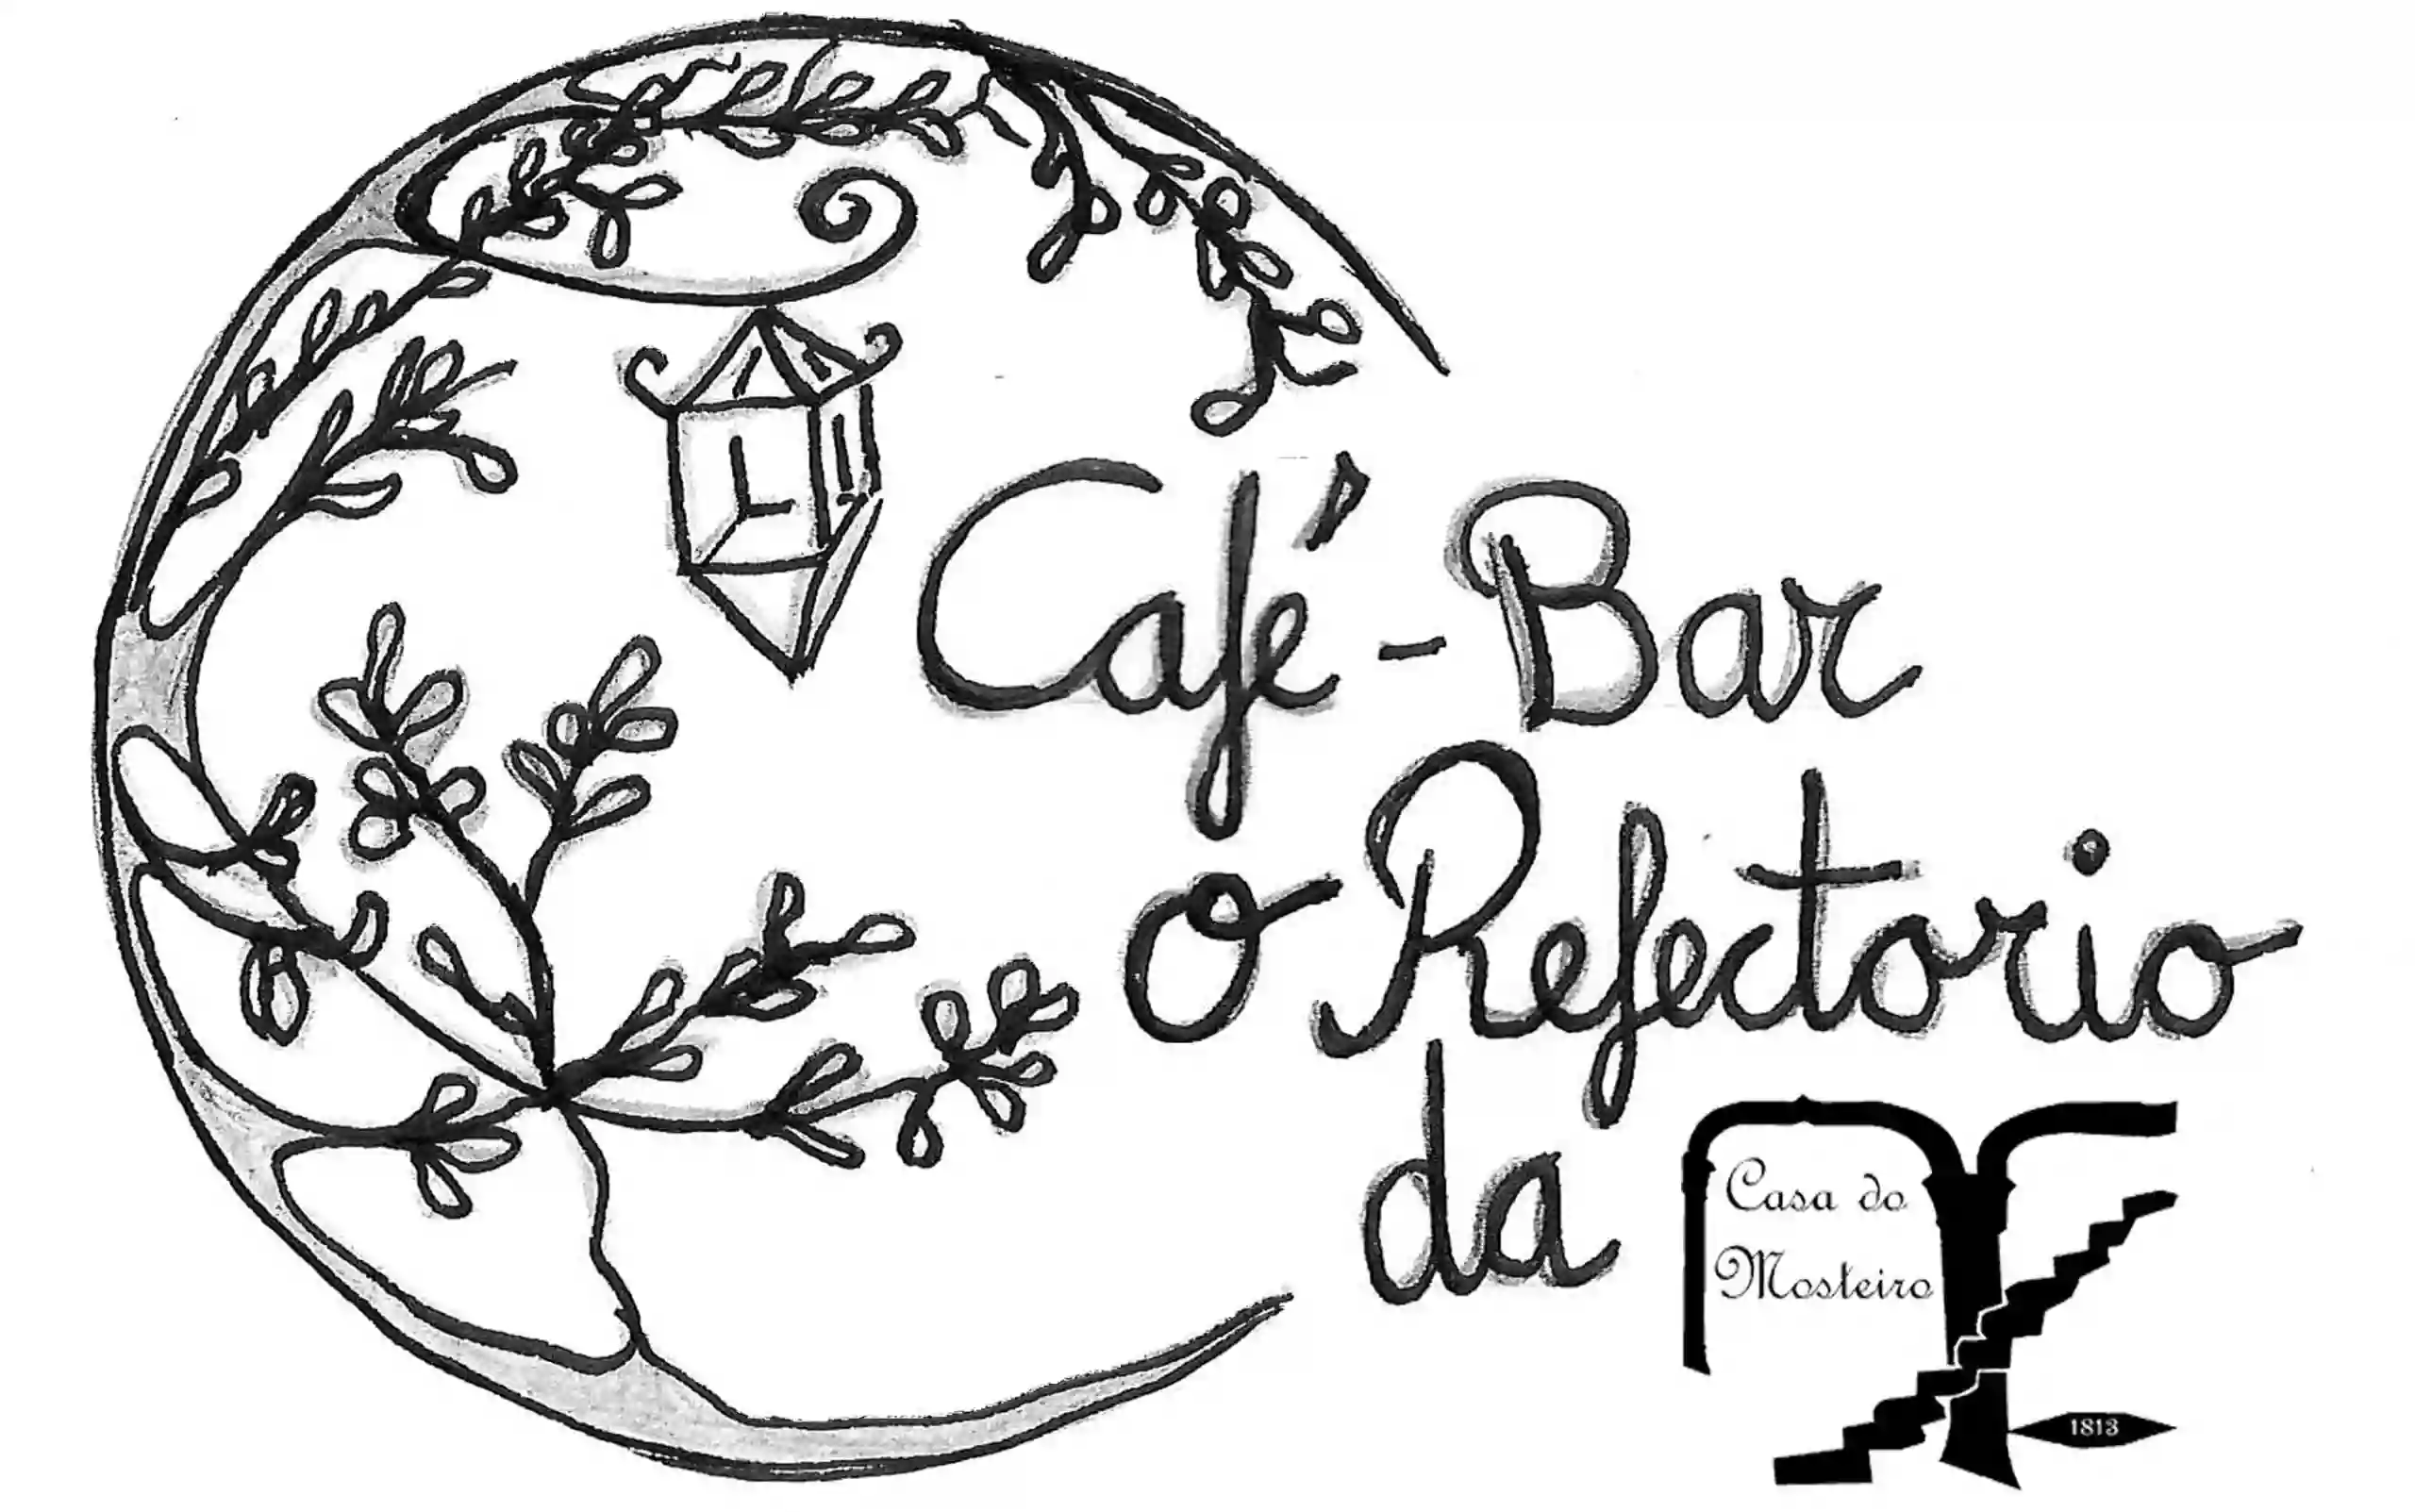 O Refectorio café bar